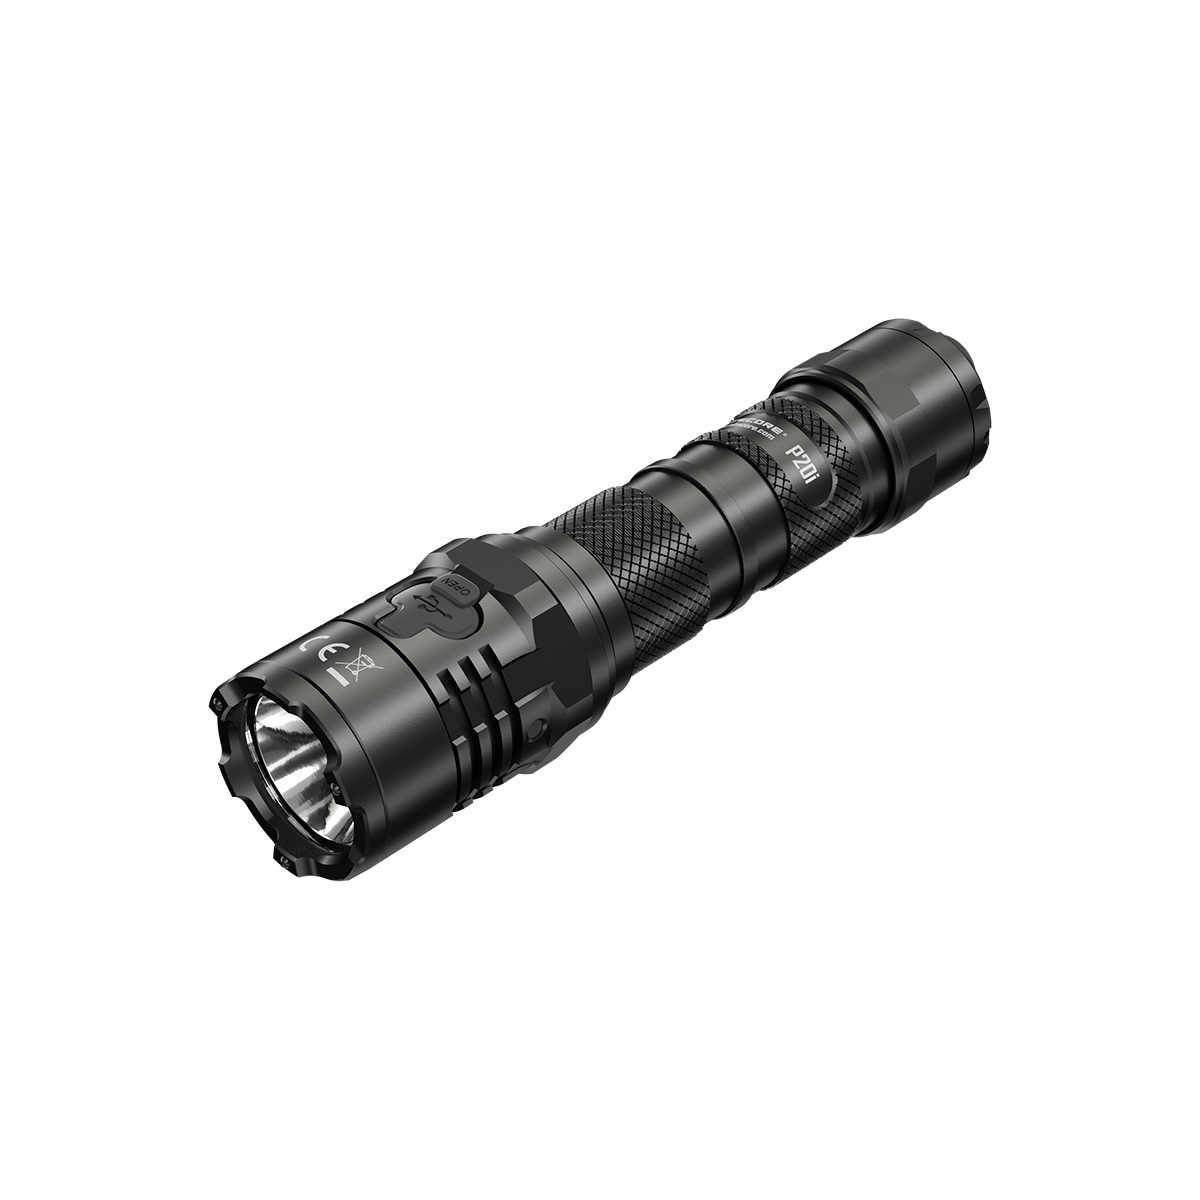 NITECORE P20i  Luminus SST40 LED 1800lm 343m Tactical Flashlight